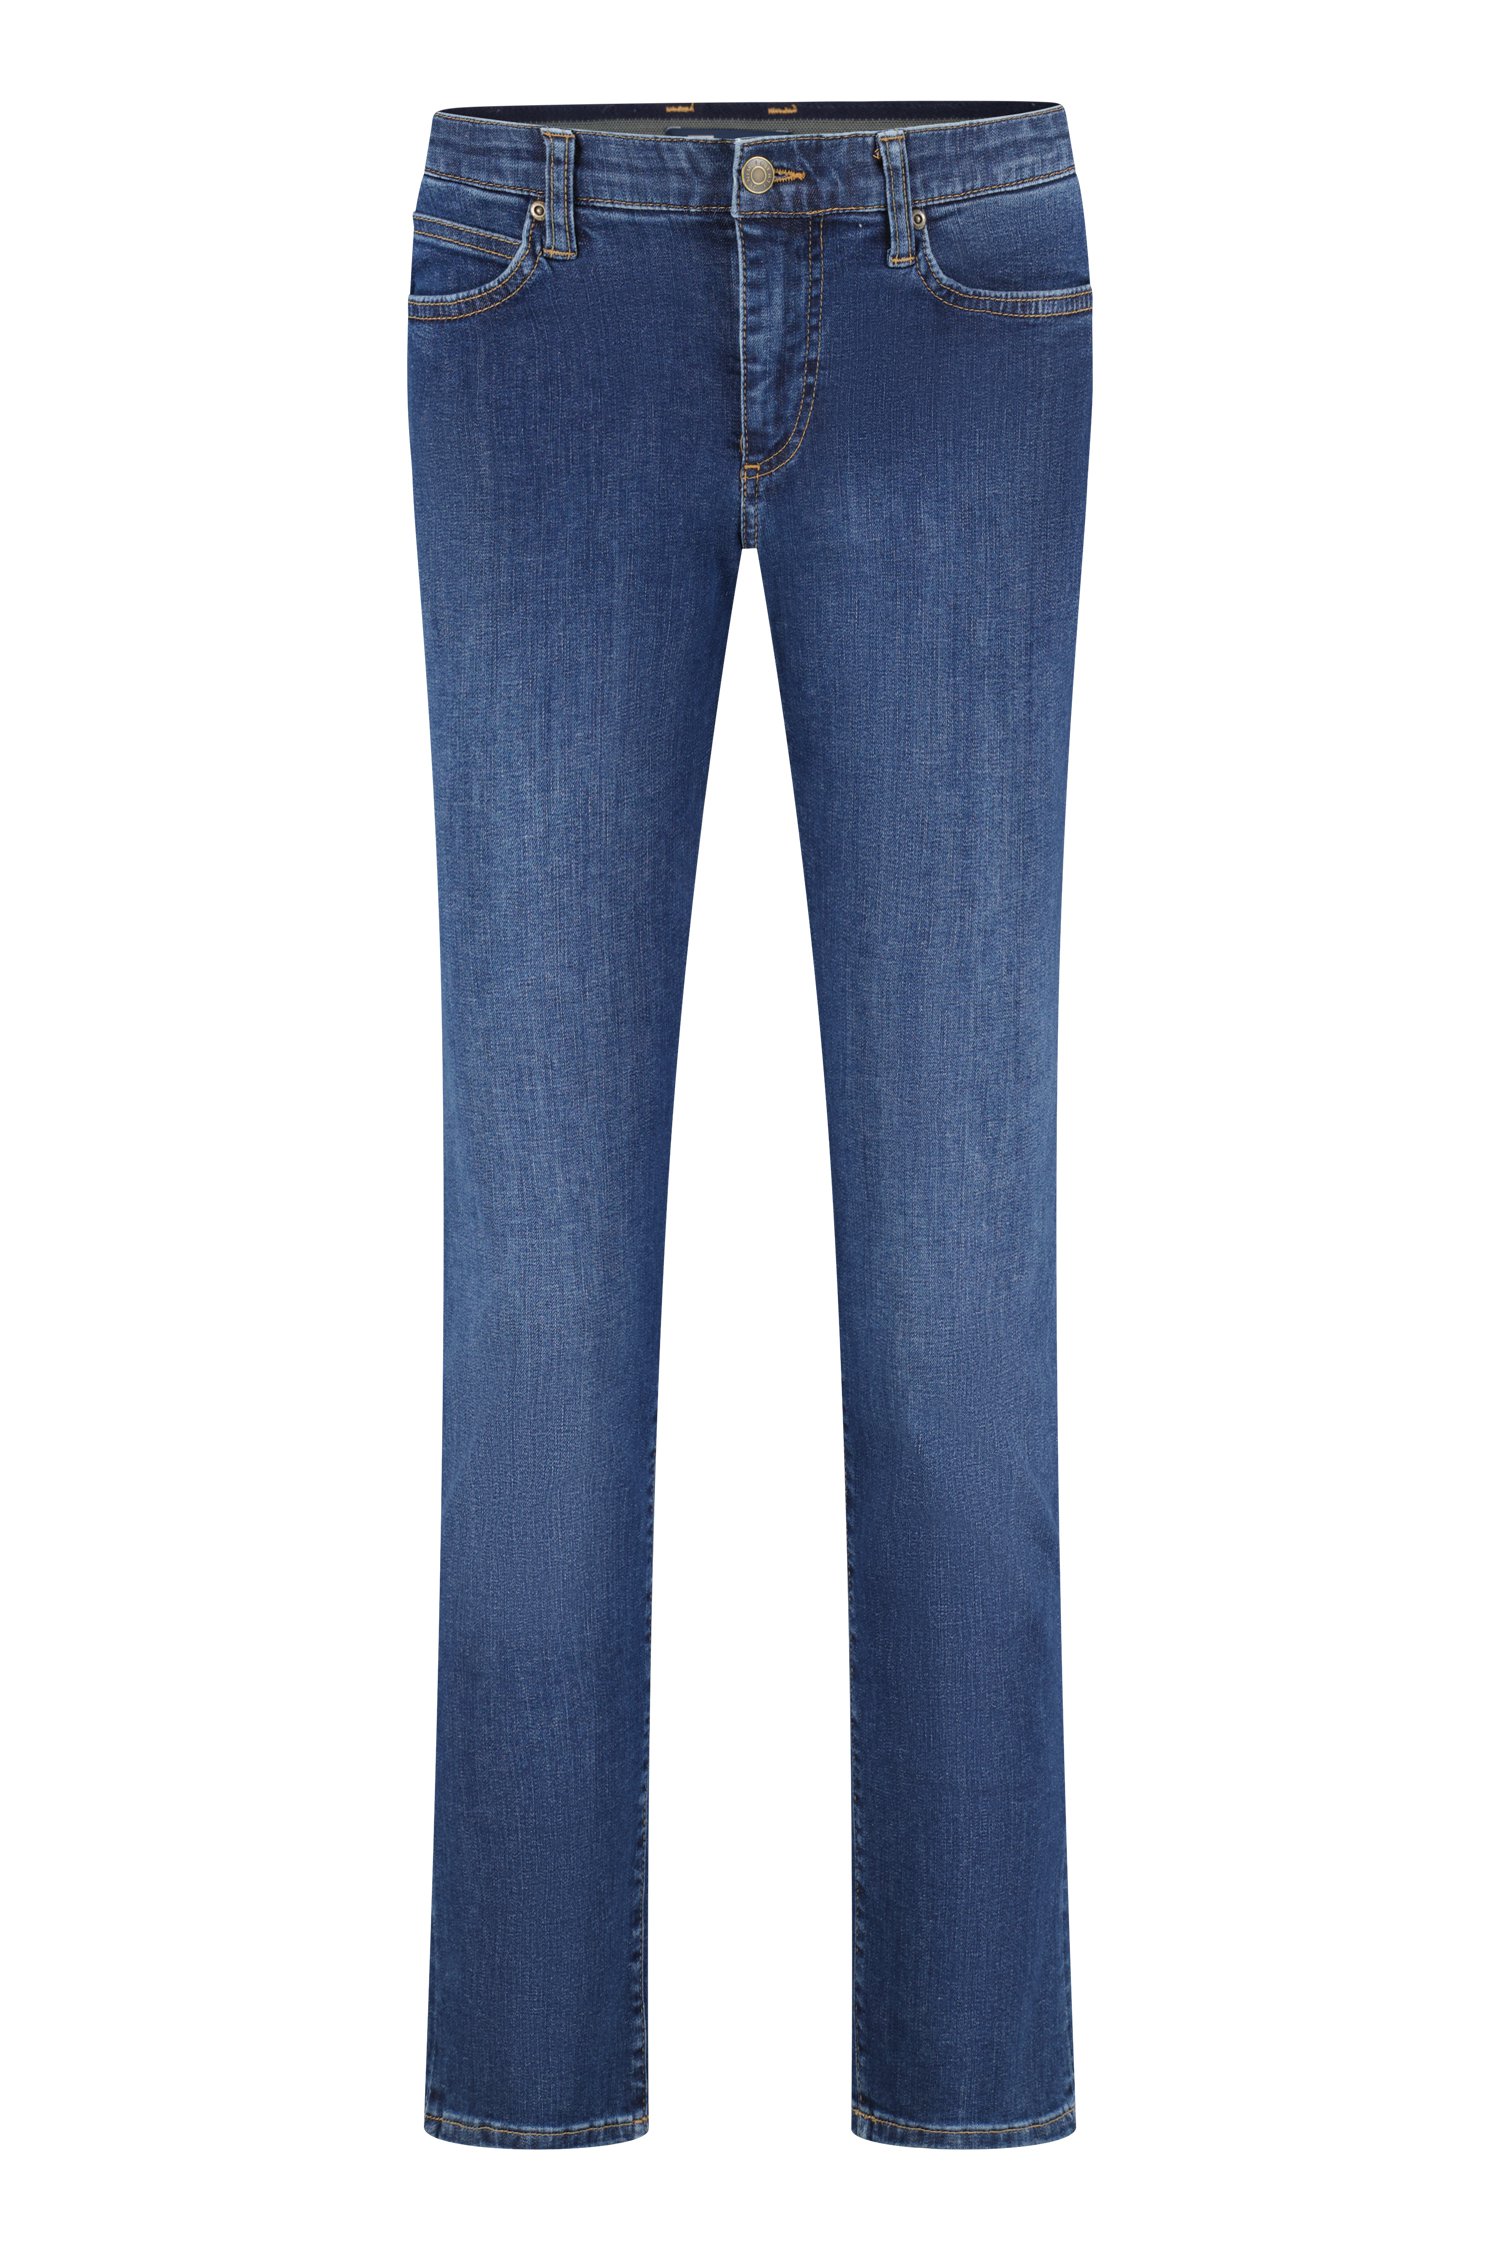 Donkerblauwe jeans - Jan - comfort fit - L32 van Liberty Island Denim voor Heren